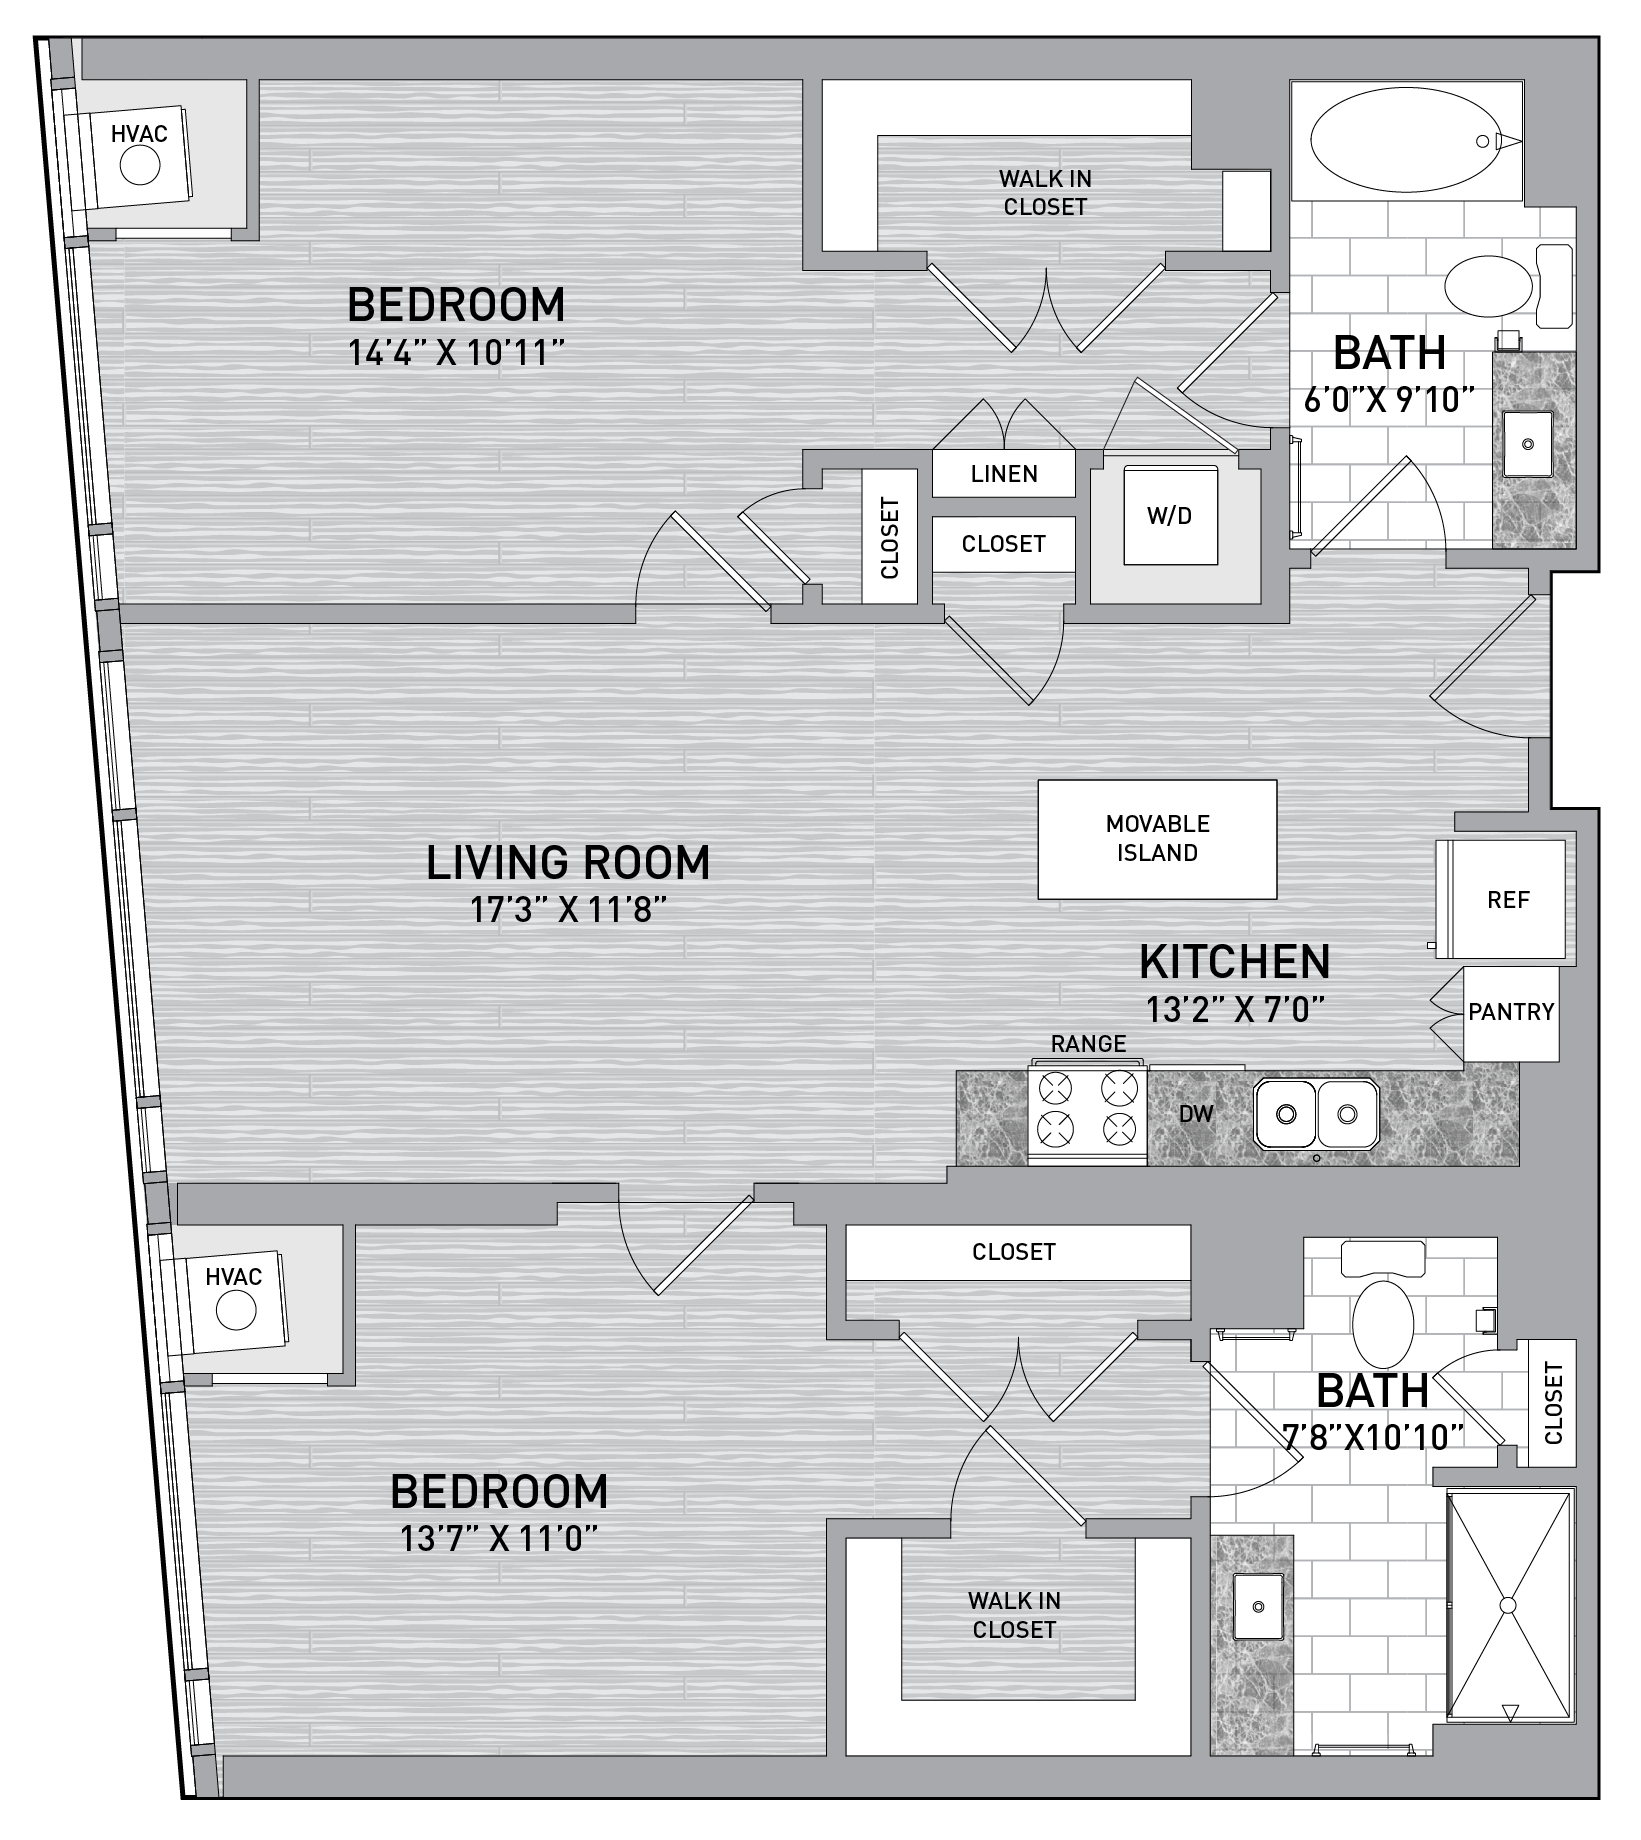 floorplan image of unit id 0922